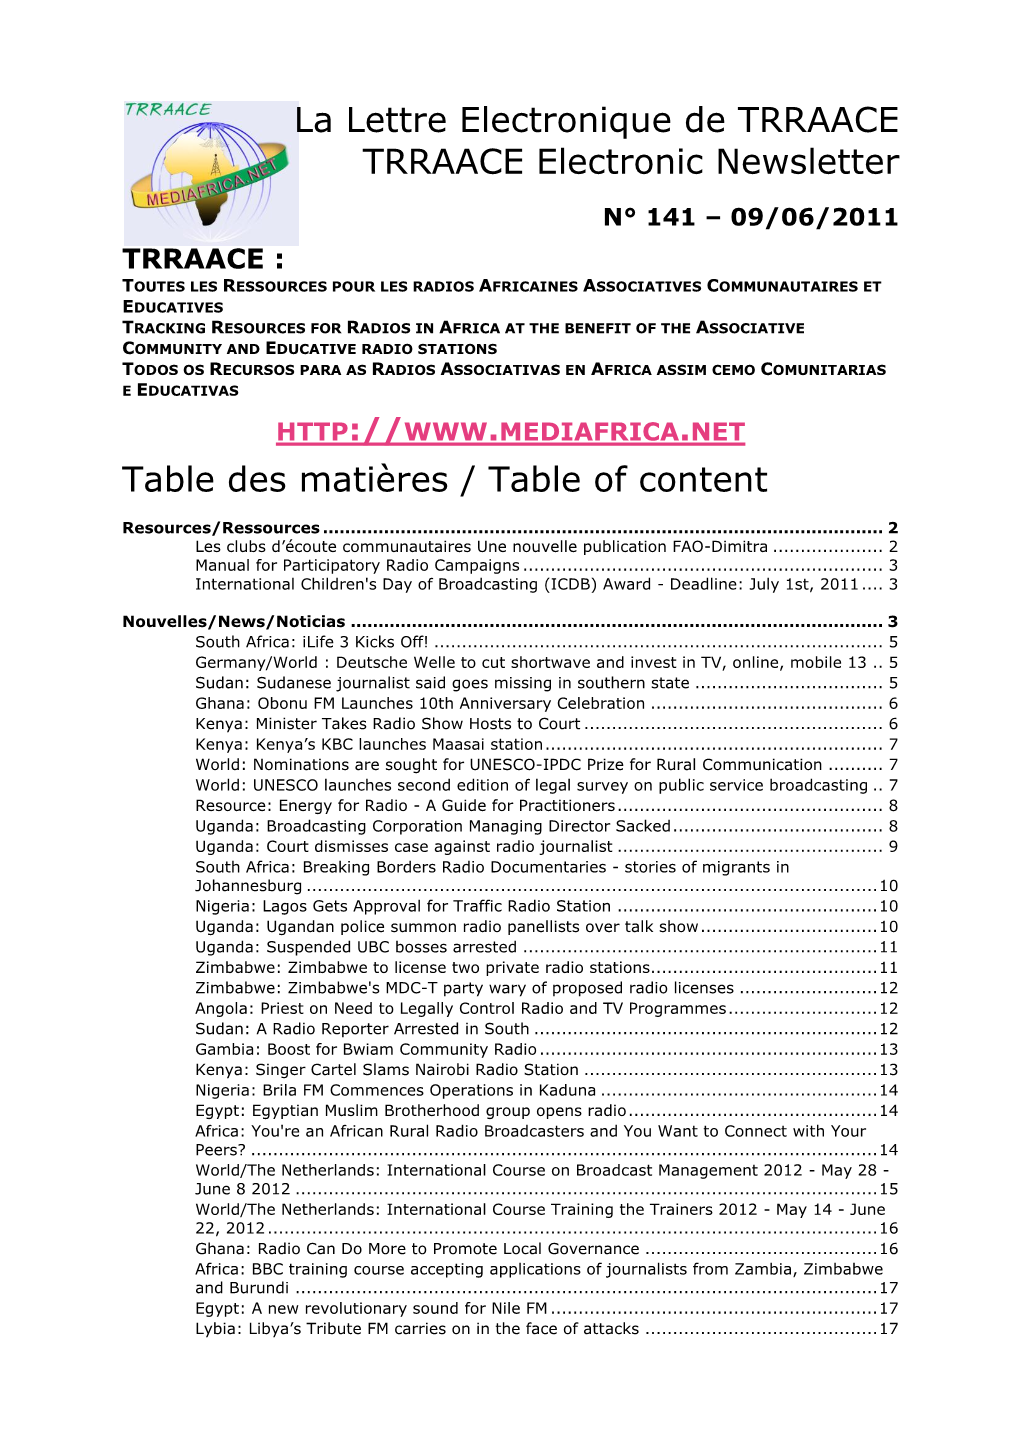 La Lettre Electronique De TRRAACE TRRAACE Electronic Newsletter Table Des Matières / Table of Content